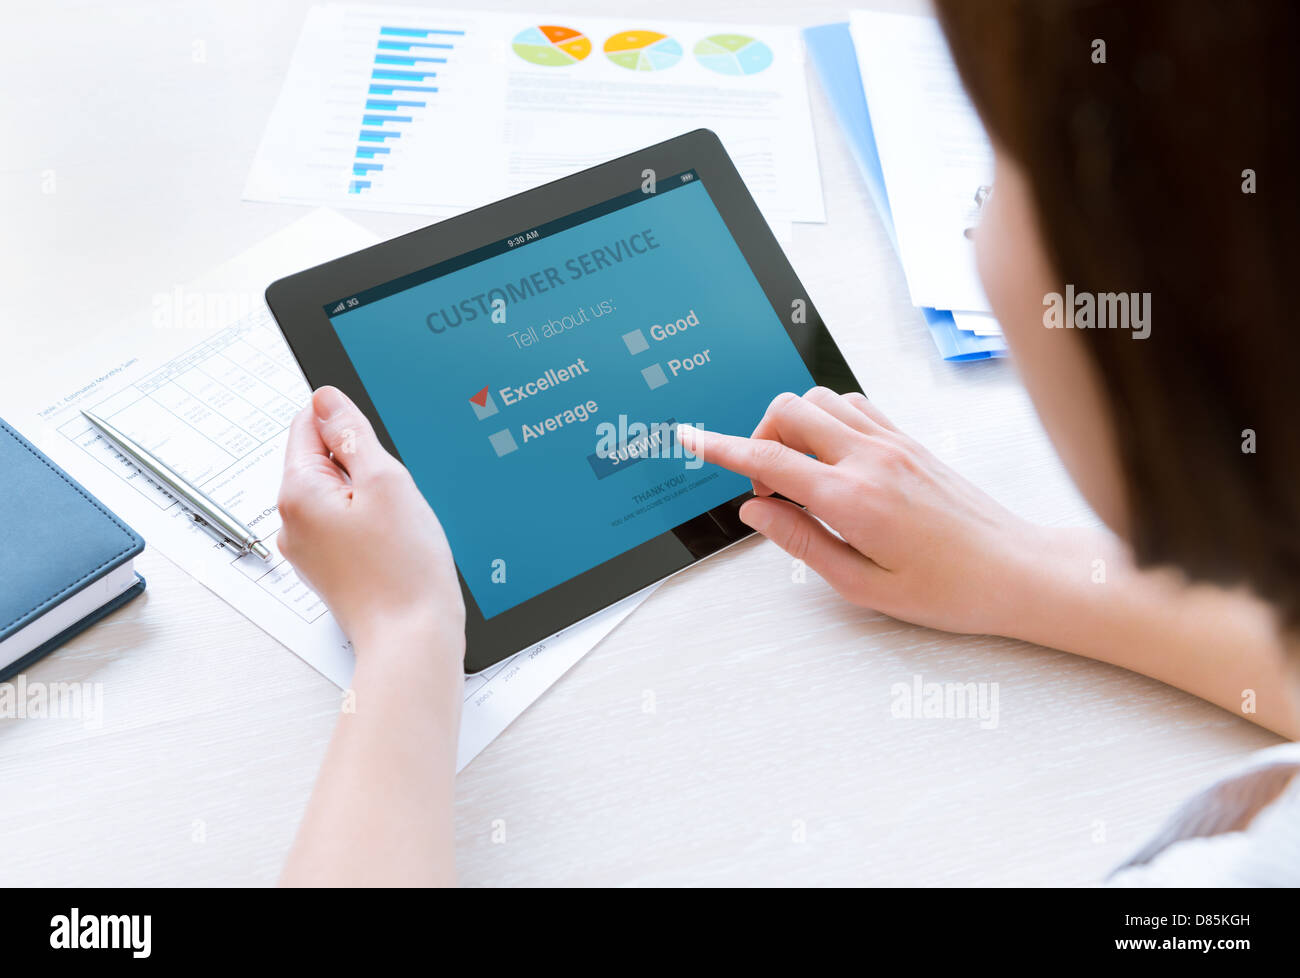 Businesswoman holding digital tablet moderne avec service clientèle Formulaire d'enquête sur un écran. Coche rouge sur une excellente option de choix Banque D'Images